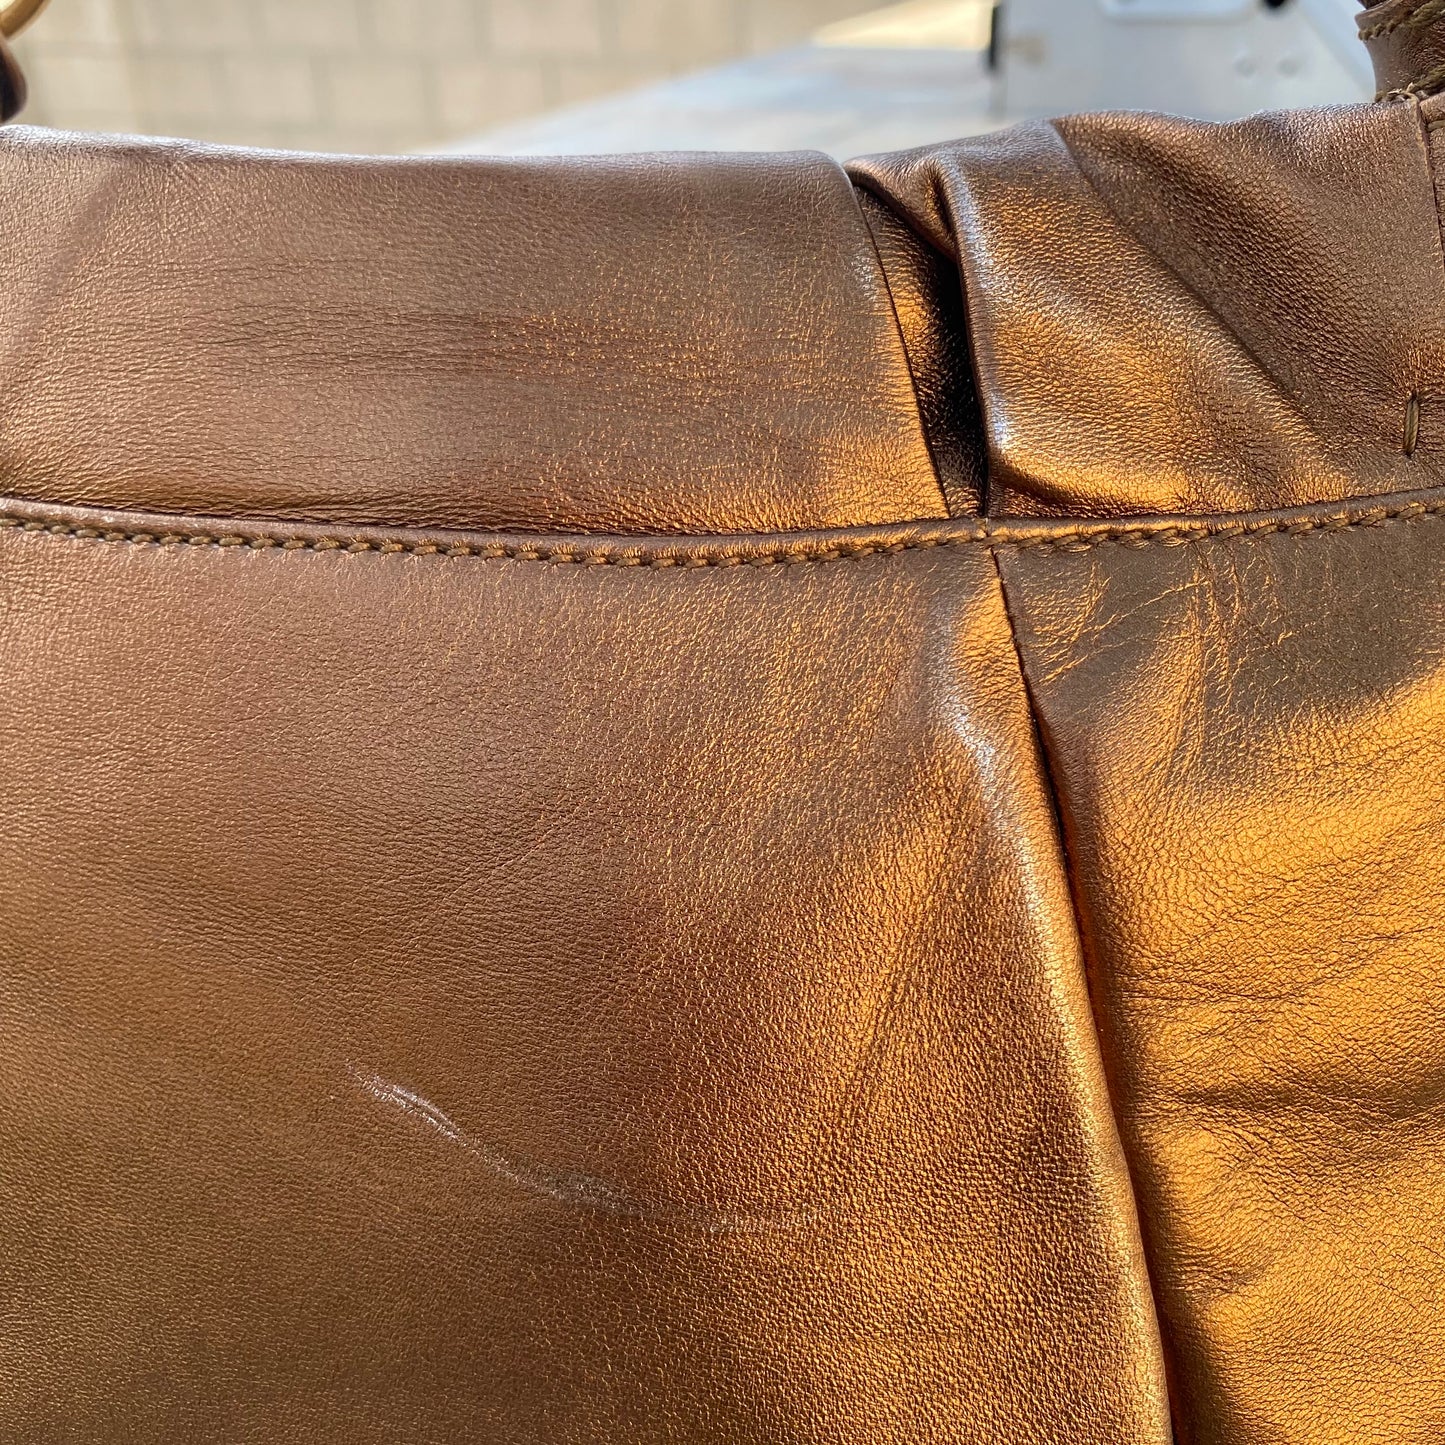 Yves Saint Laurent YSL Bow Leather Hobo Shoulder Bag